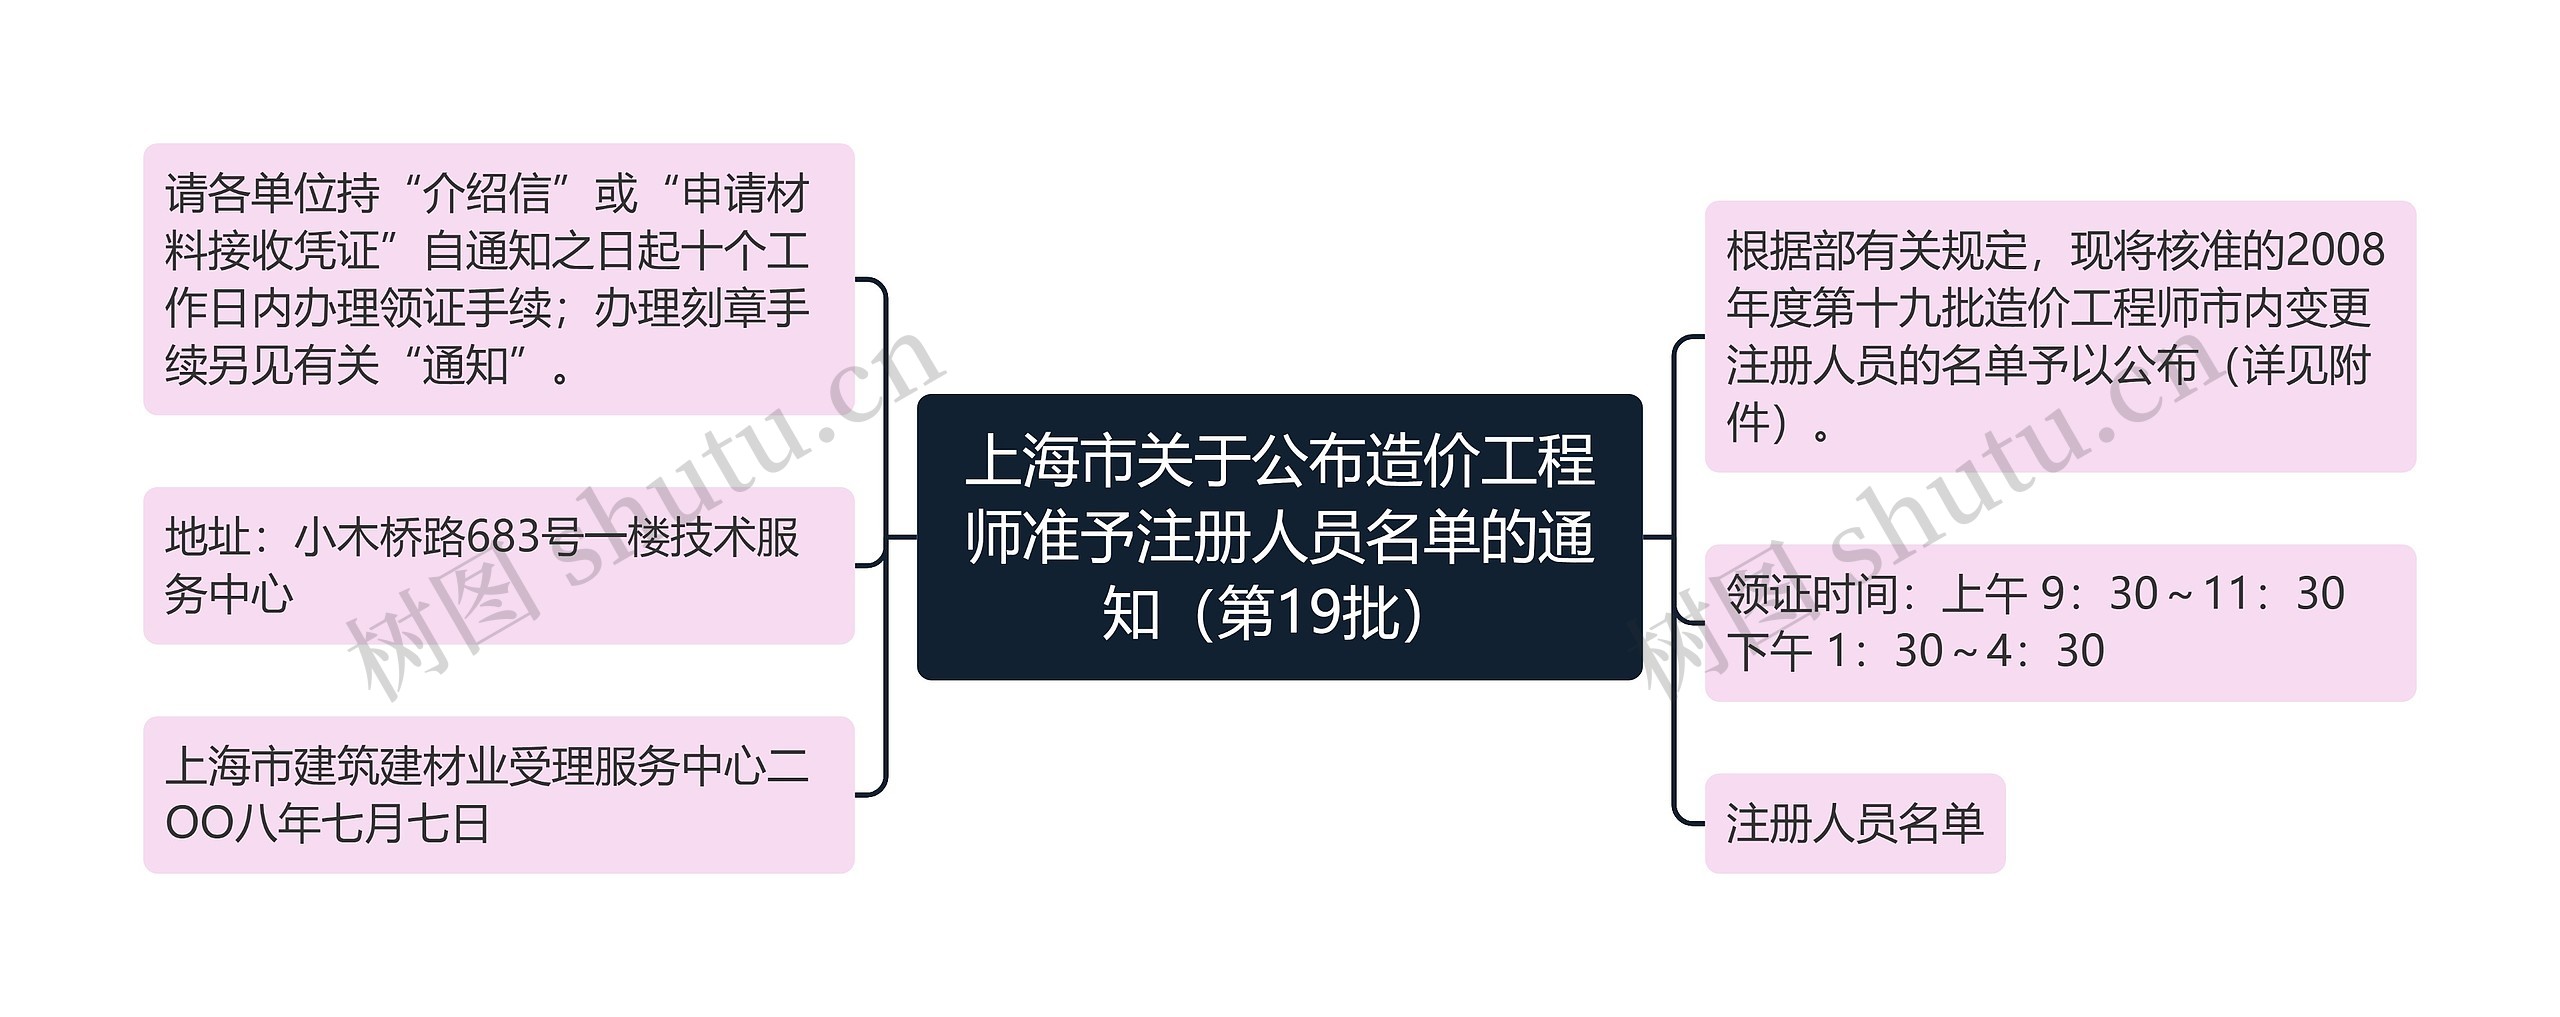 上海市关于公布造价工程师准予注册人员名单的通知（第19批）思维导图